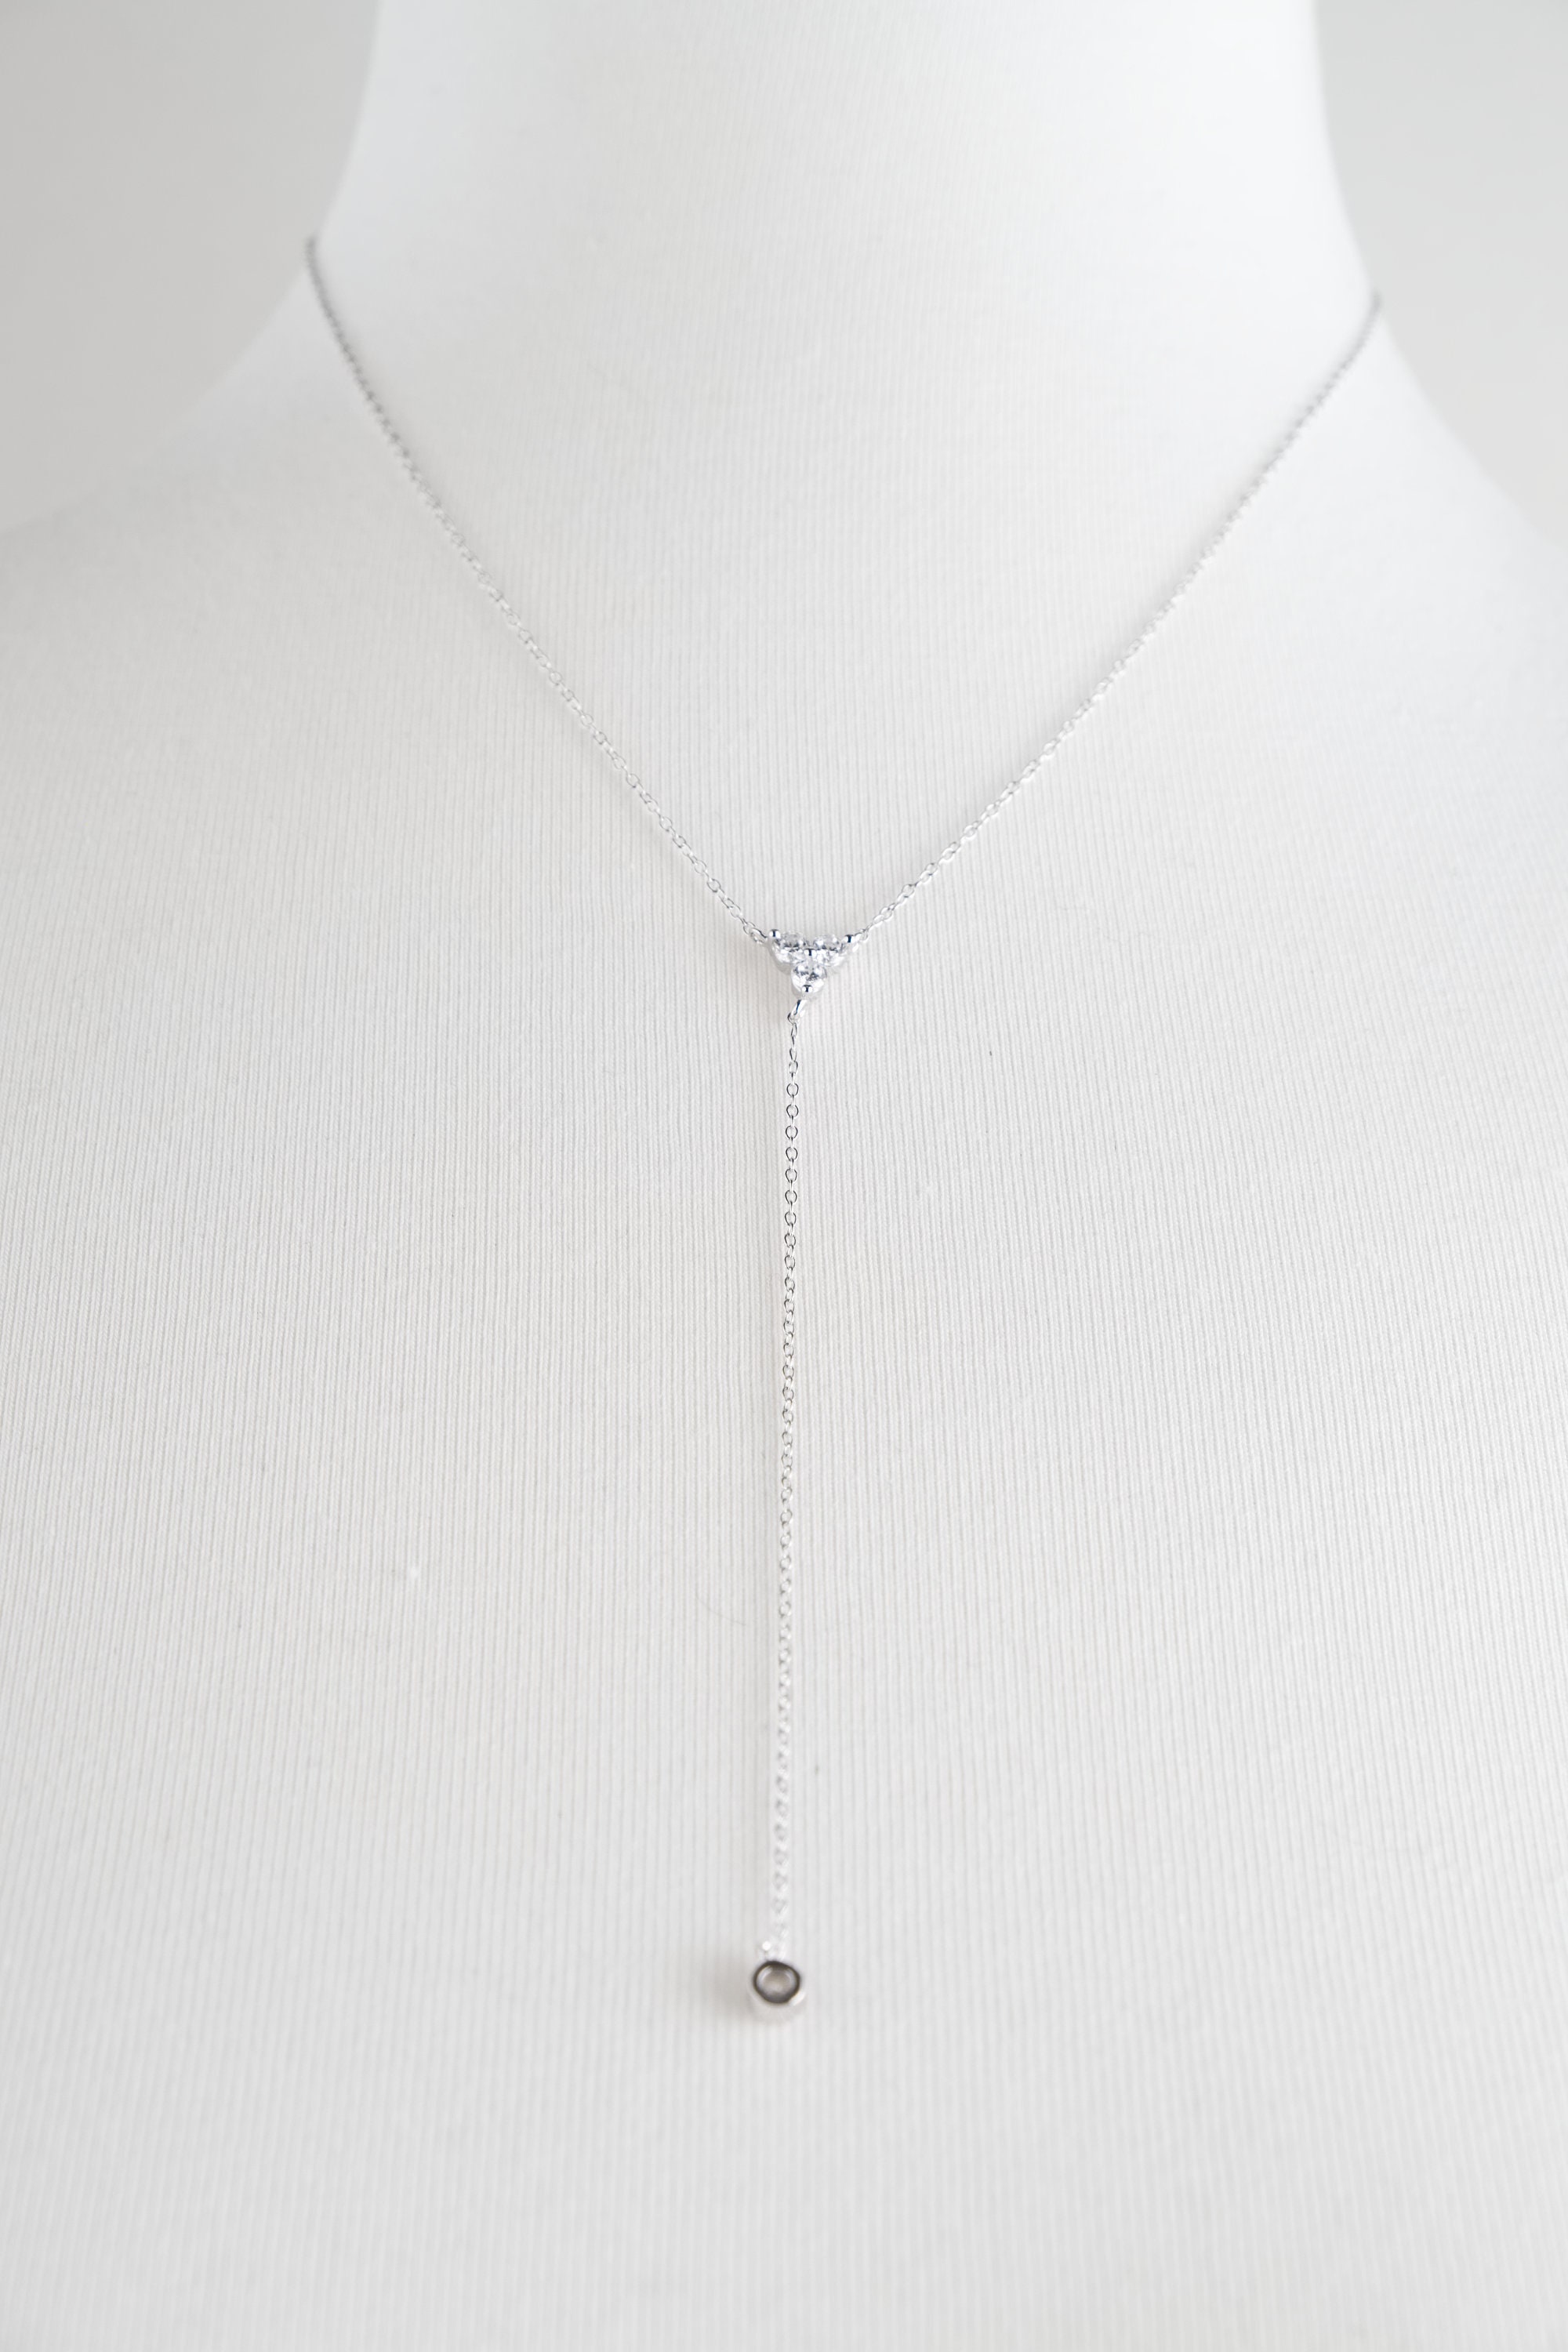 VENSERI Y Necklace Lariat Necklaces Heart Y Necklace for Women Drop Necklaces for Women 